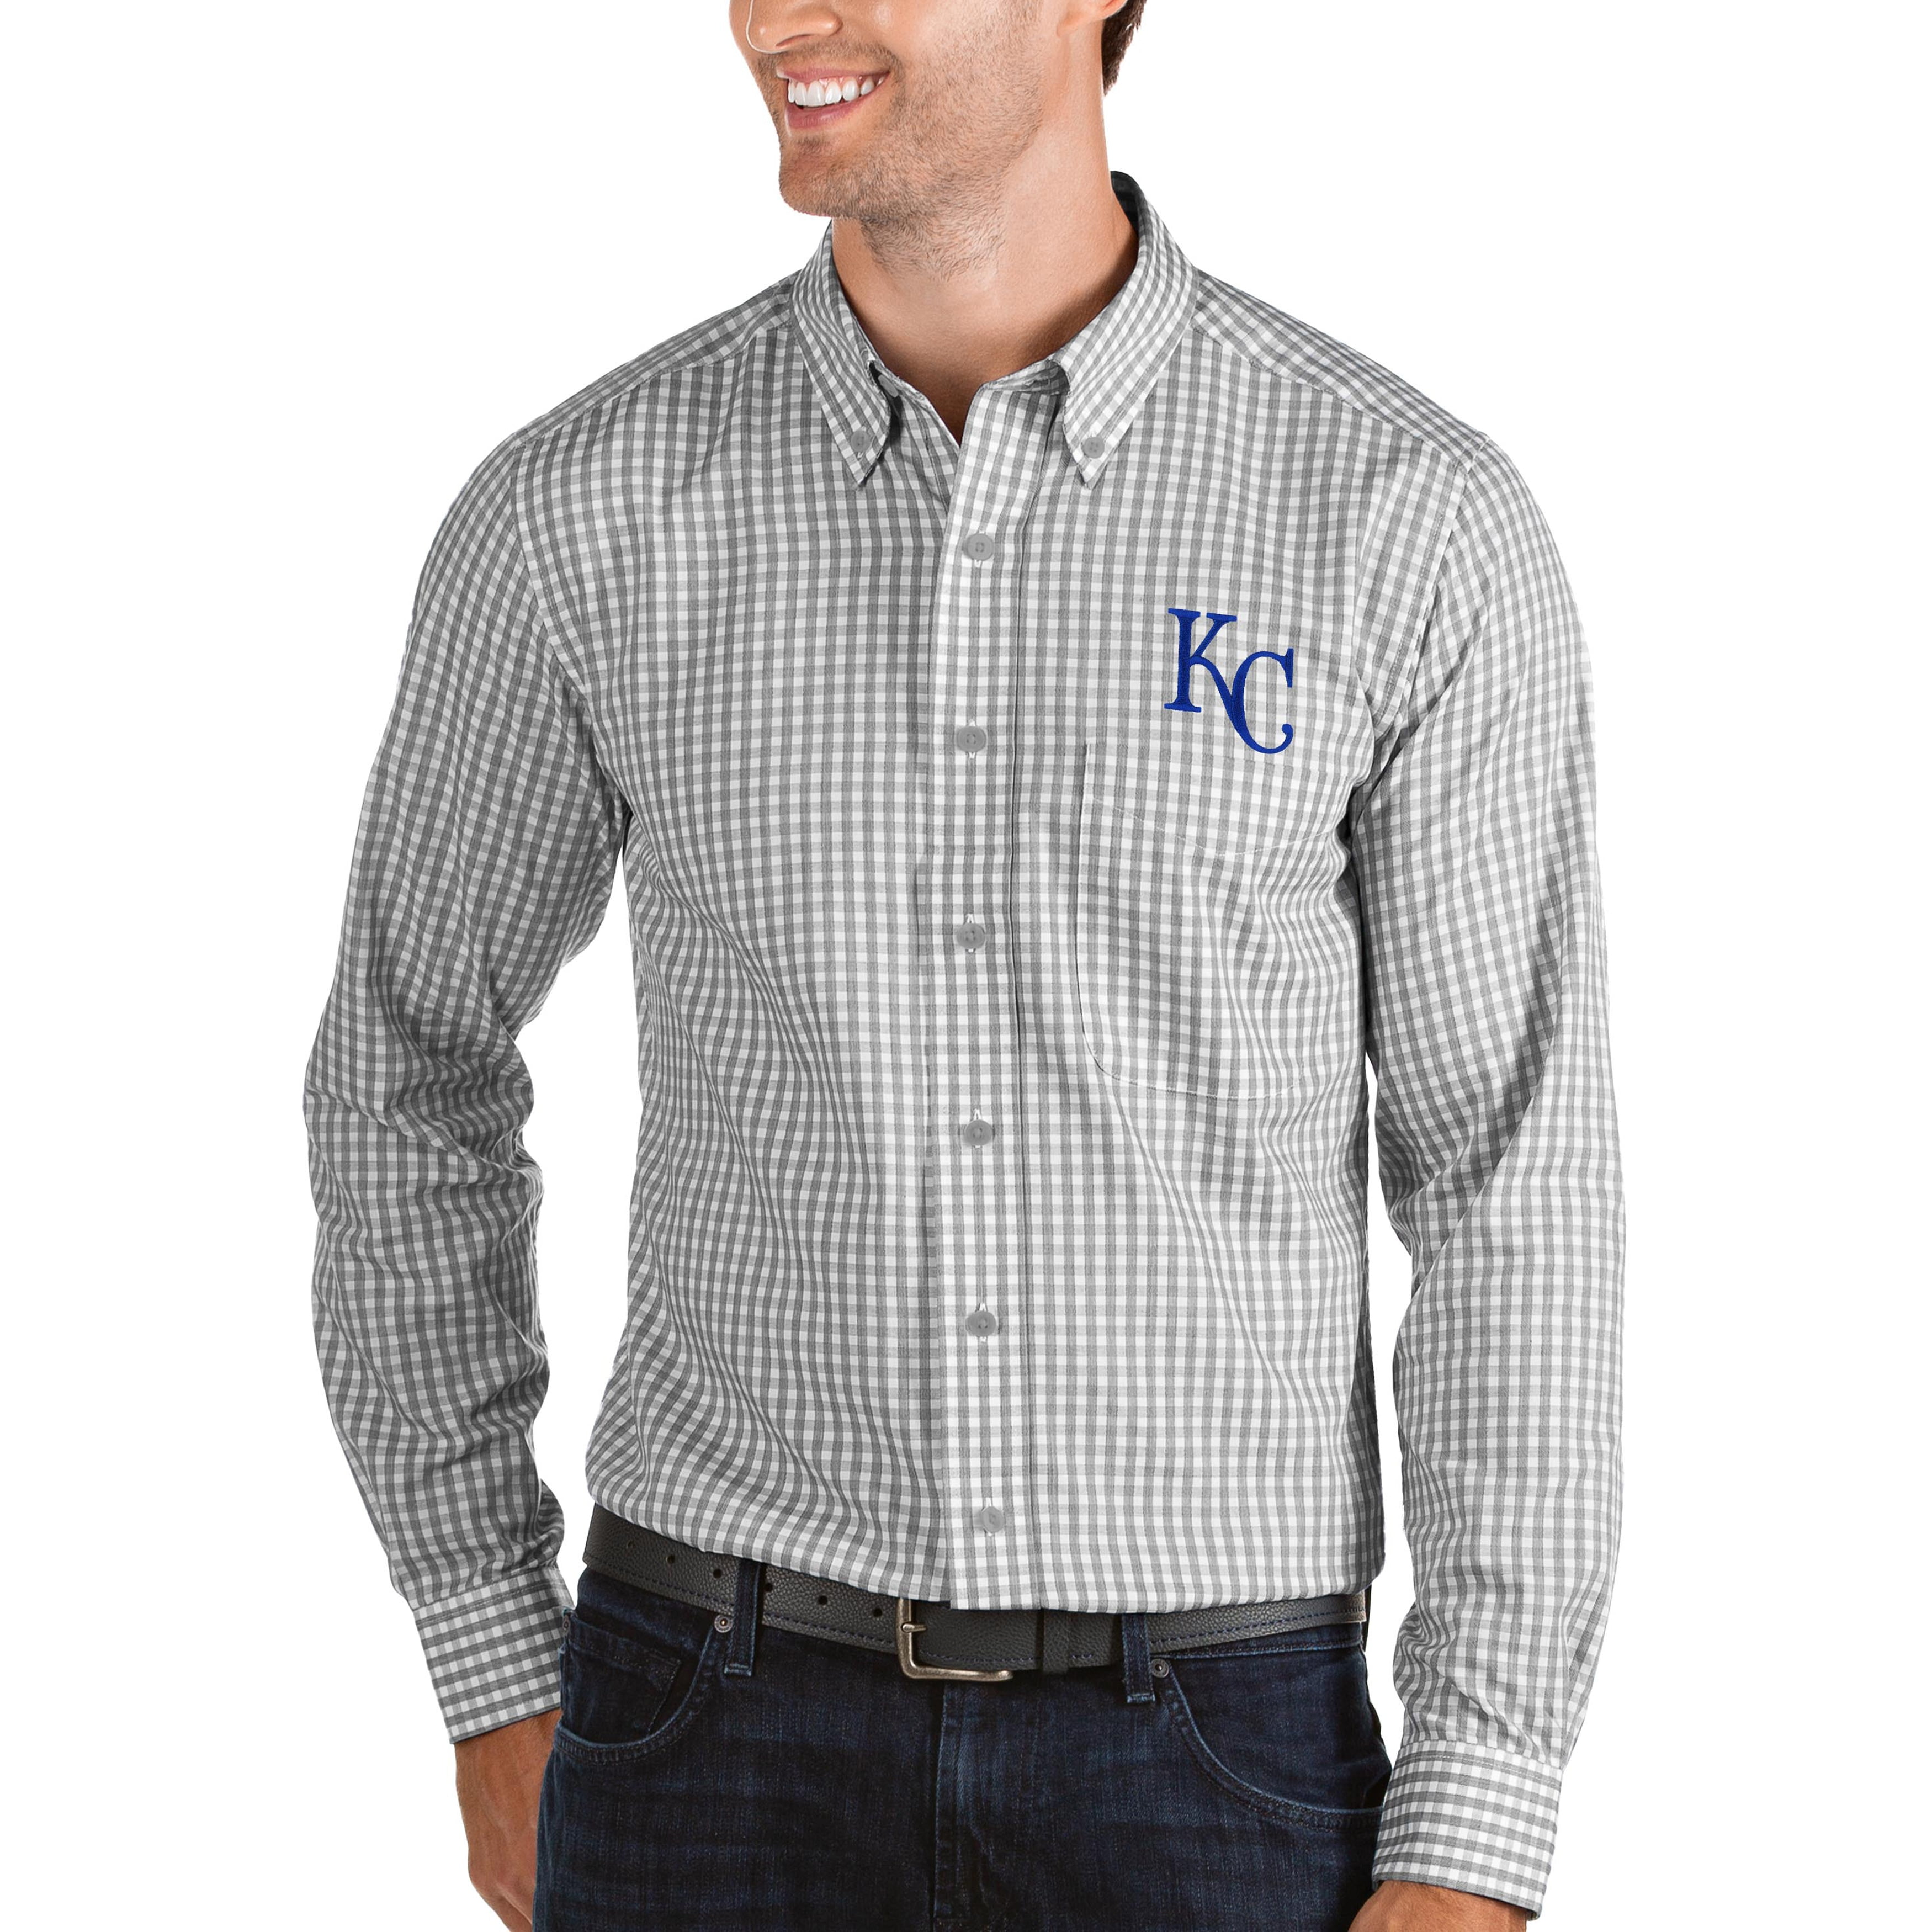 kc royals button up shirt